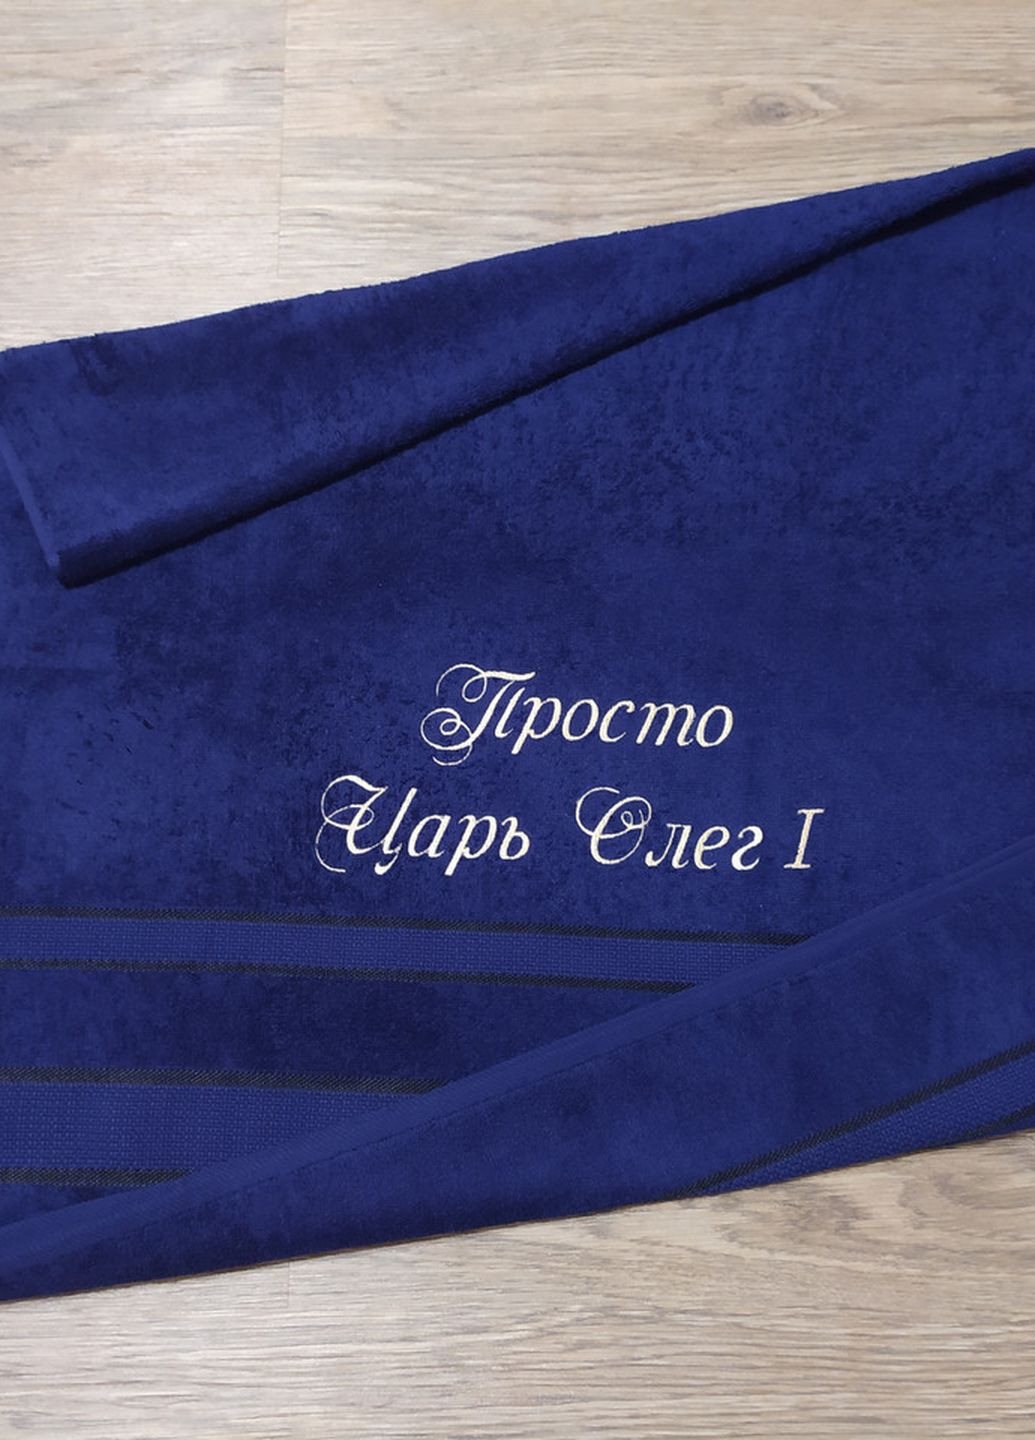 No Brand полотенце с именной вышивкой махровое банное 70*140 темно-синий олег 00033 однотонный темно-синий производство - Украина